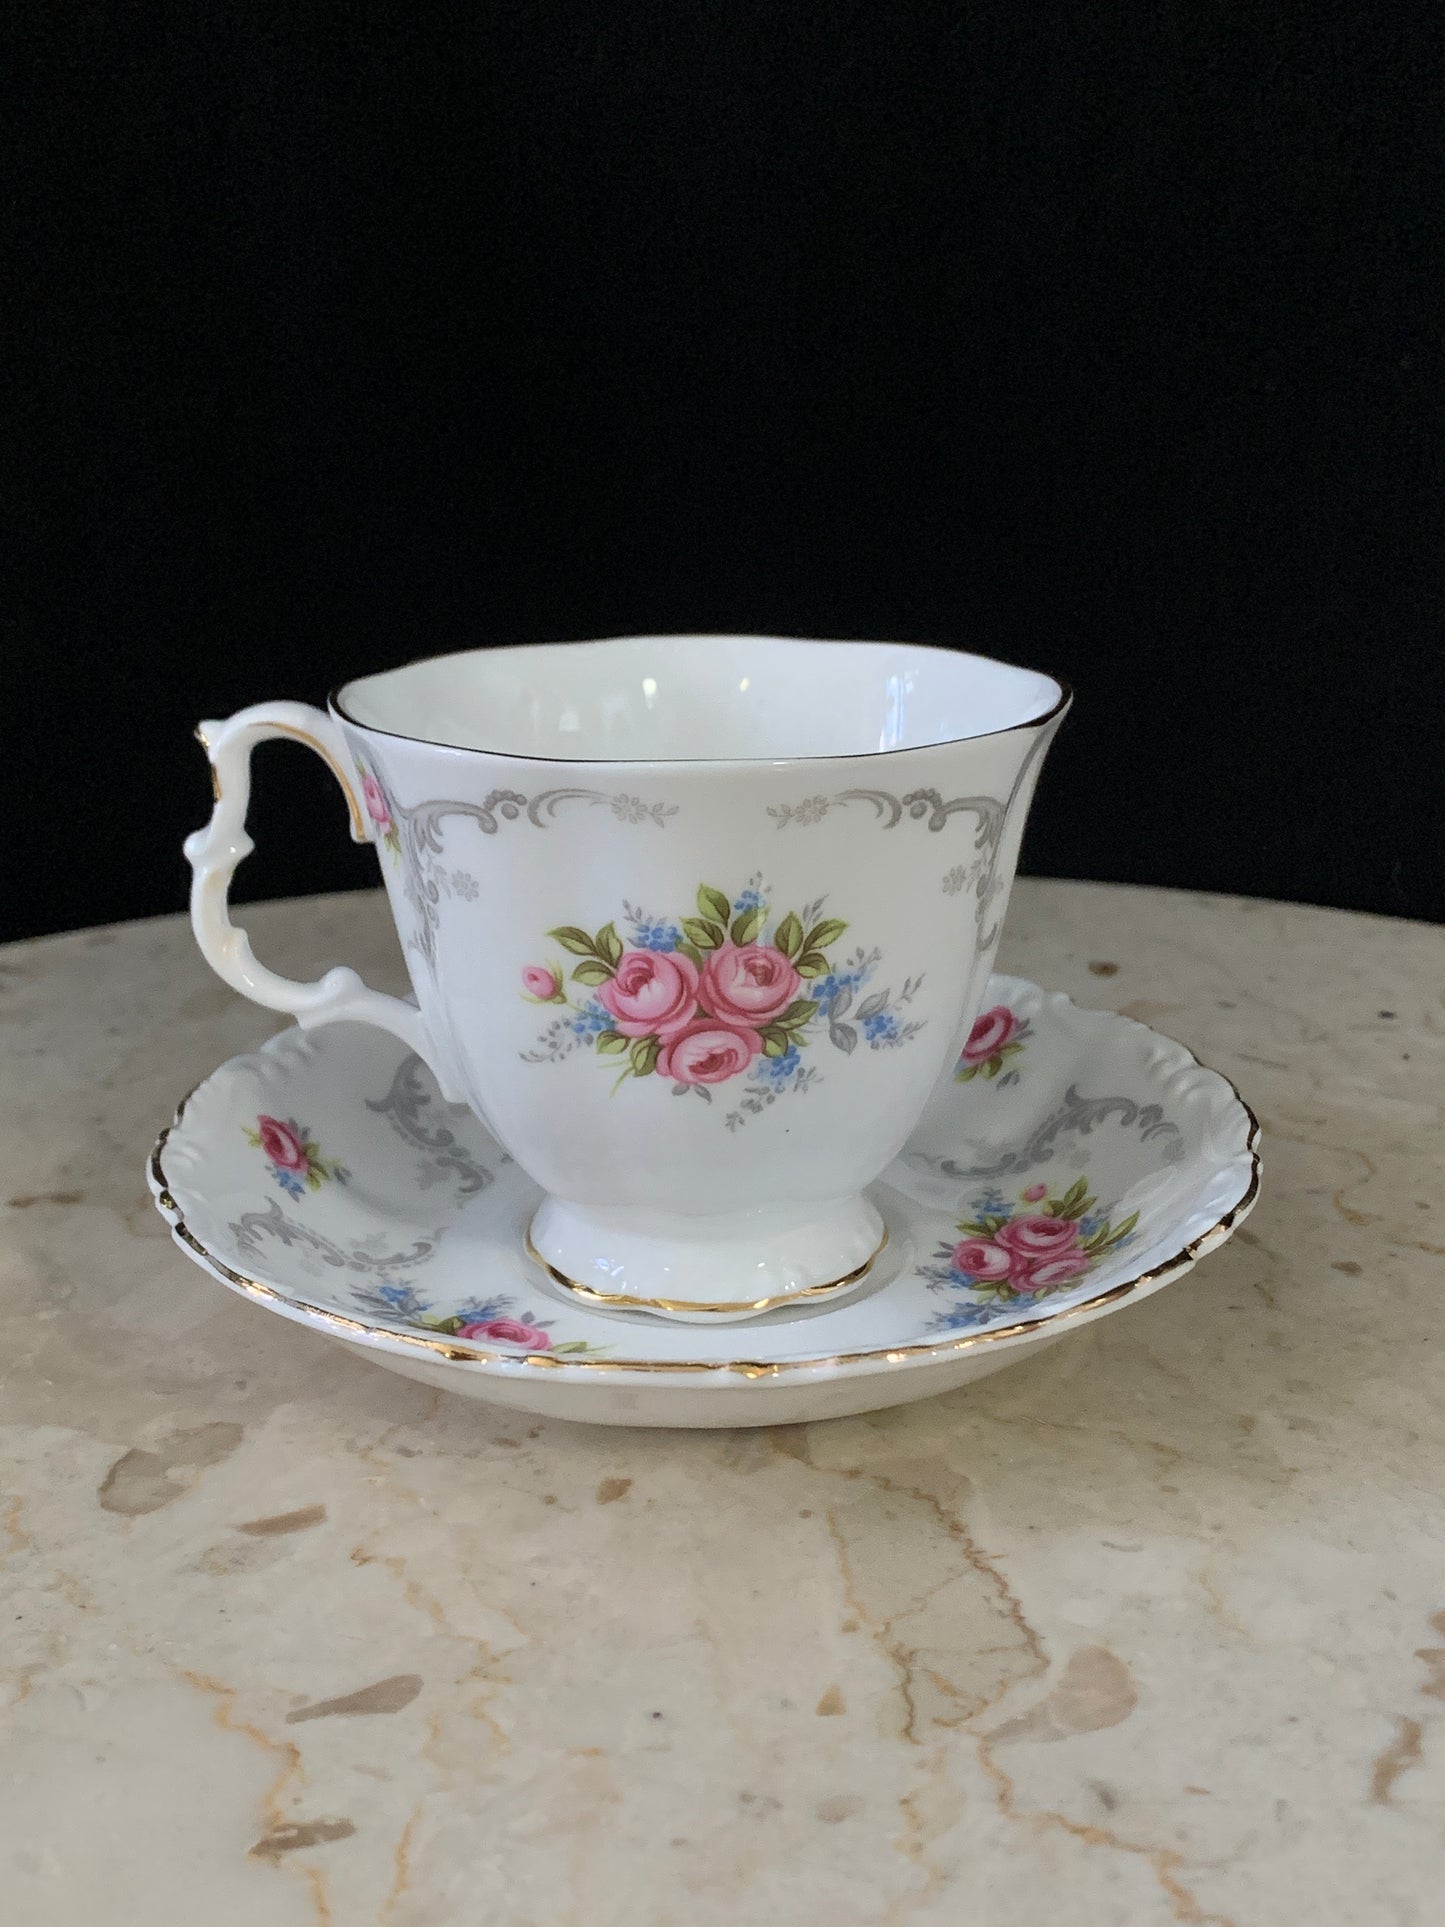 Royal Albert Tranquility Teacup and Saucer Set Pink Floral Teacup